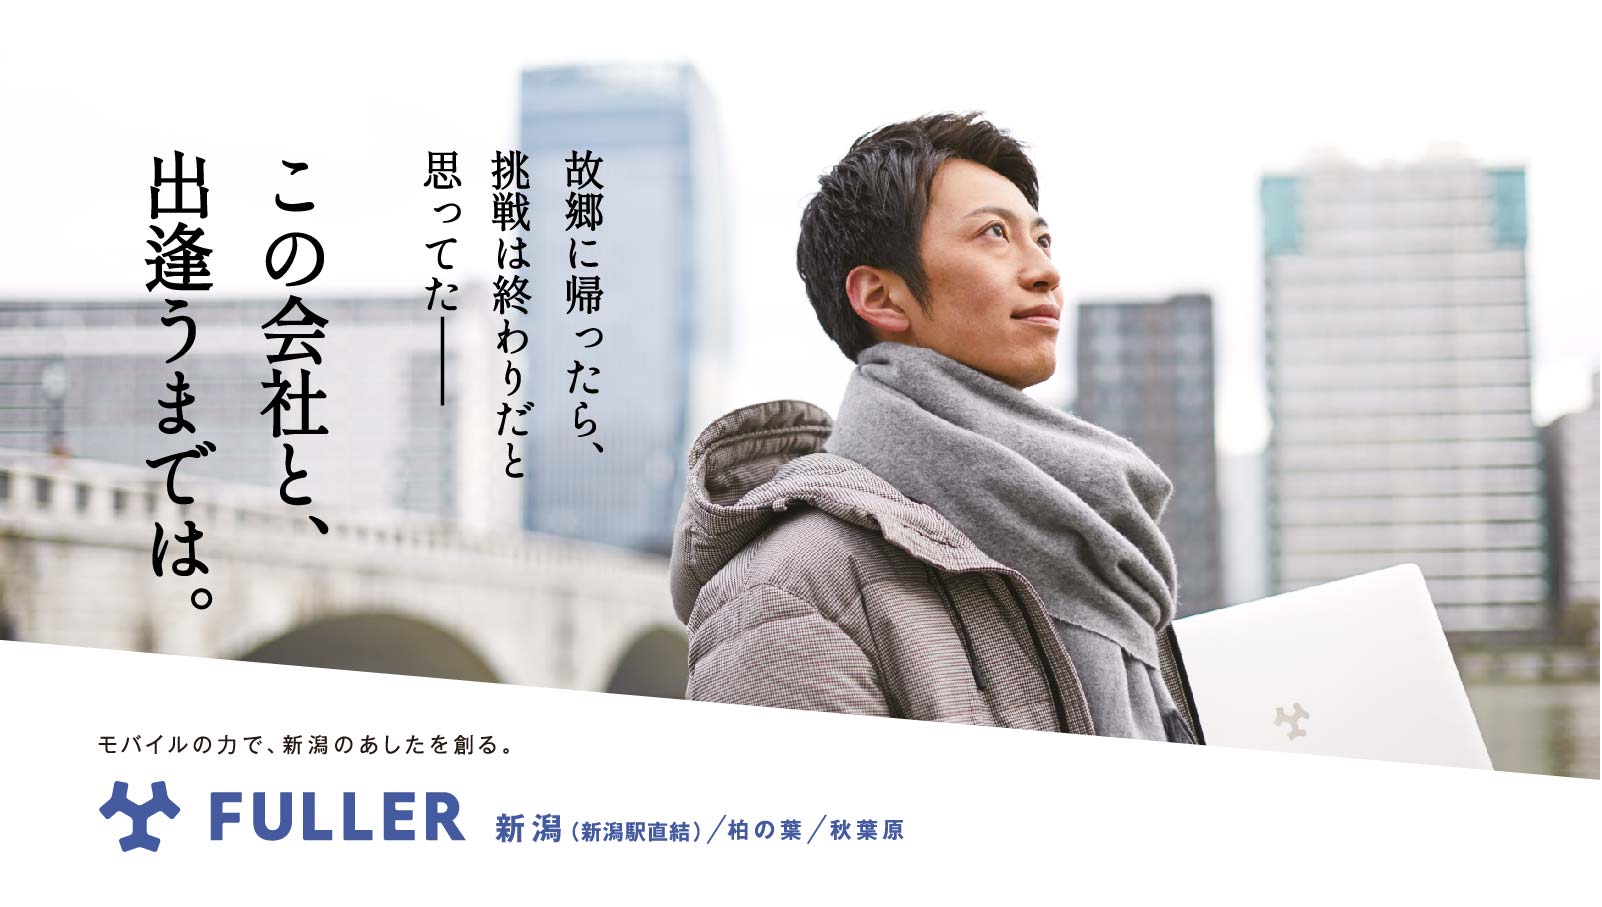 フラー、上越新幹線にて採用広告掲出